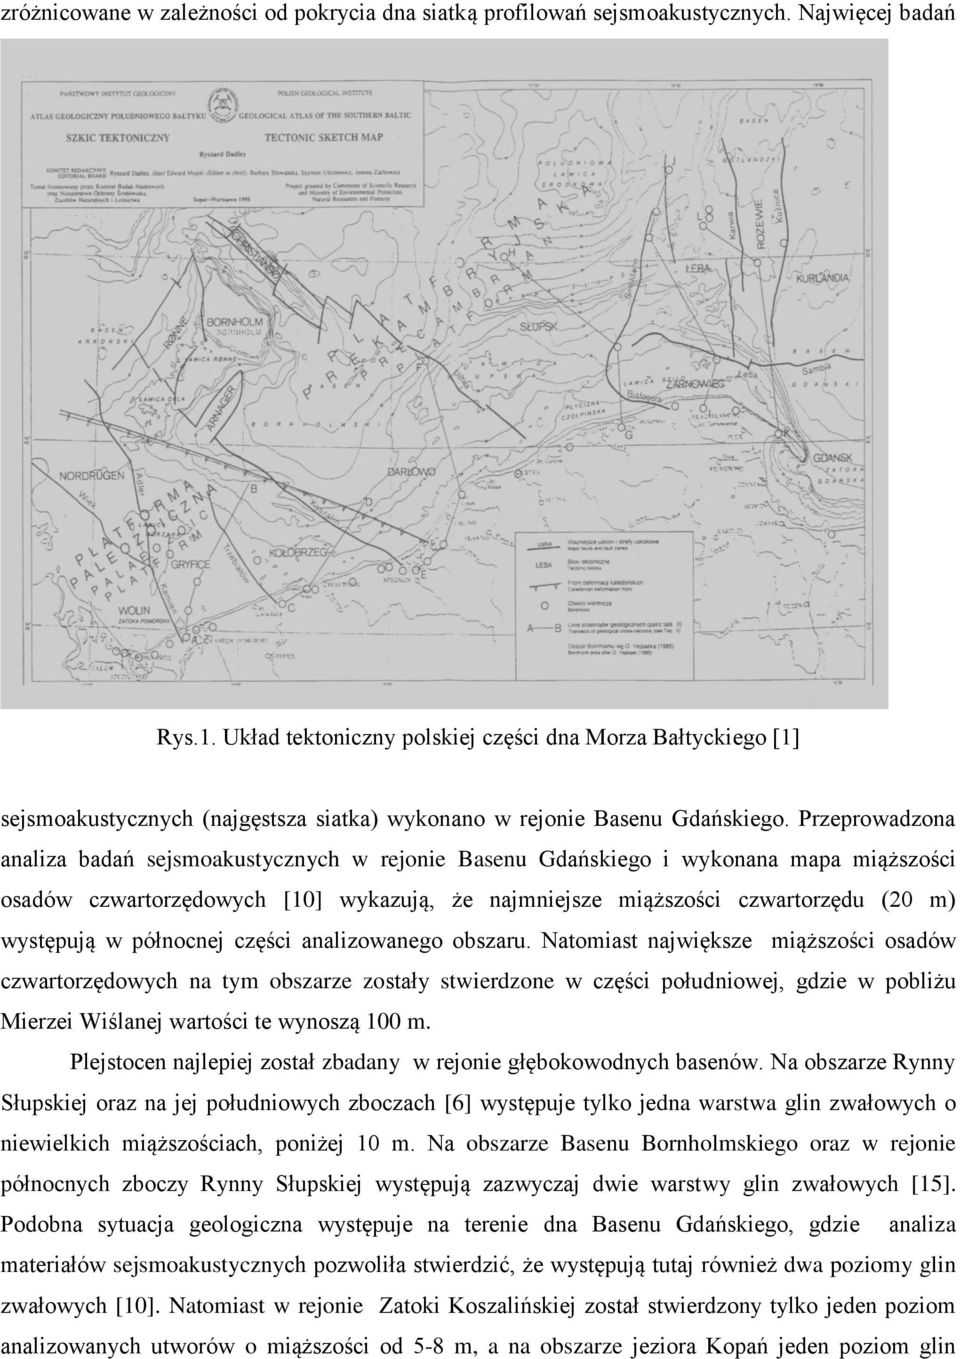 Przeprowadzona analiza badań sejsmoakustycznych w rejonie Basenu Gdańskiego i wykonana mapa miąższości osadów czwartorzędowych [10] wykazują, że najmniejsze miąższości czwartorzędu (20 m) występują w